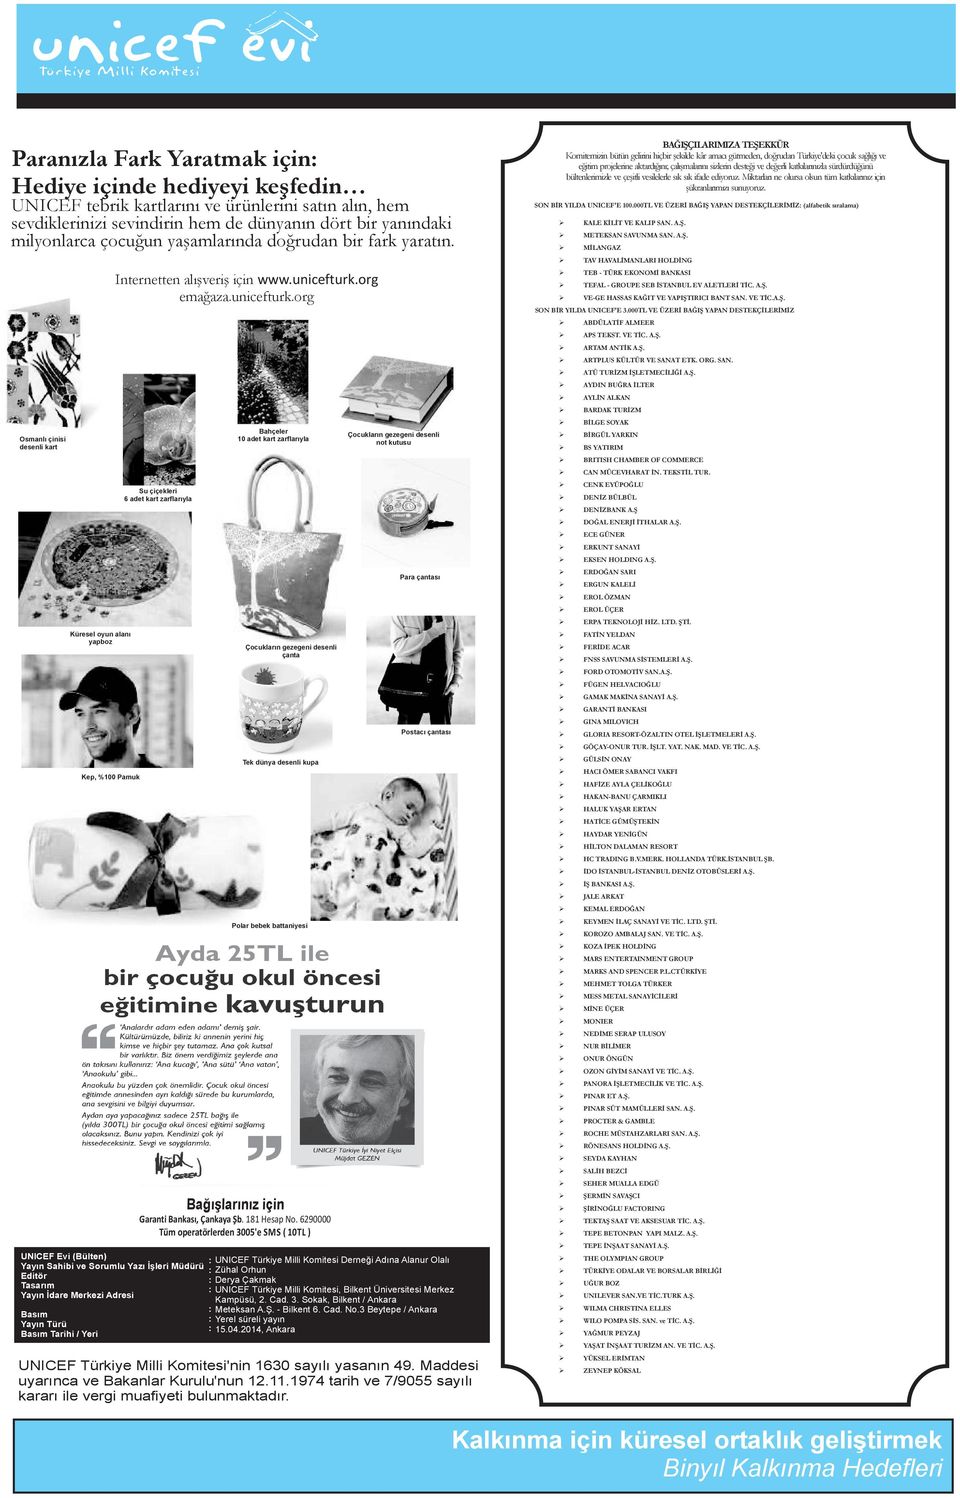 Osmanlı çinisi desenli kart Küresel oyun alanı yapboz UNICEF Evi (Bülten) Yayın Sahibi ve Sorumlu Yazı İşleri Müdürü Editör Tasarım Yayın İdare Merkezi Adresi Basım Yayın Türü Basım Tarihi / Yeri